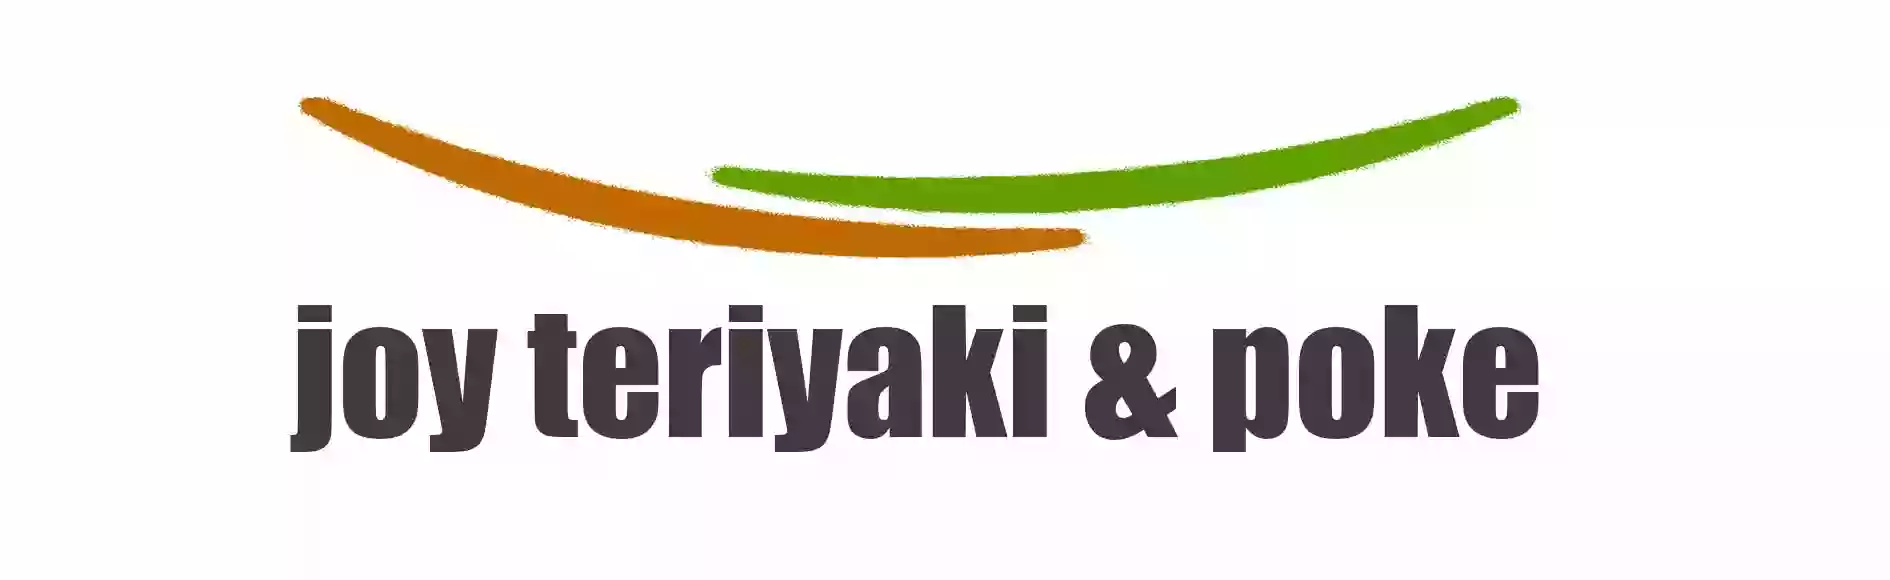 Joy Teriyaki & Poke